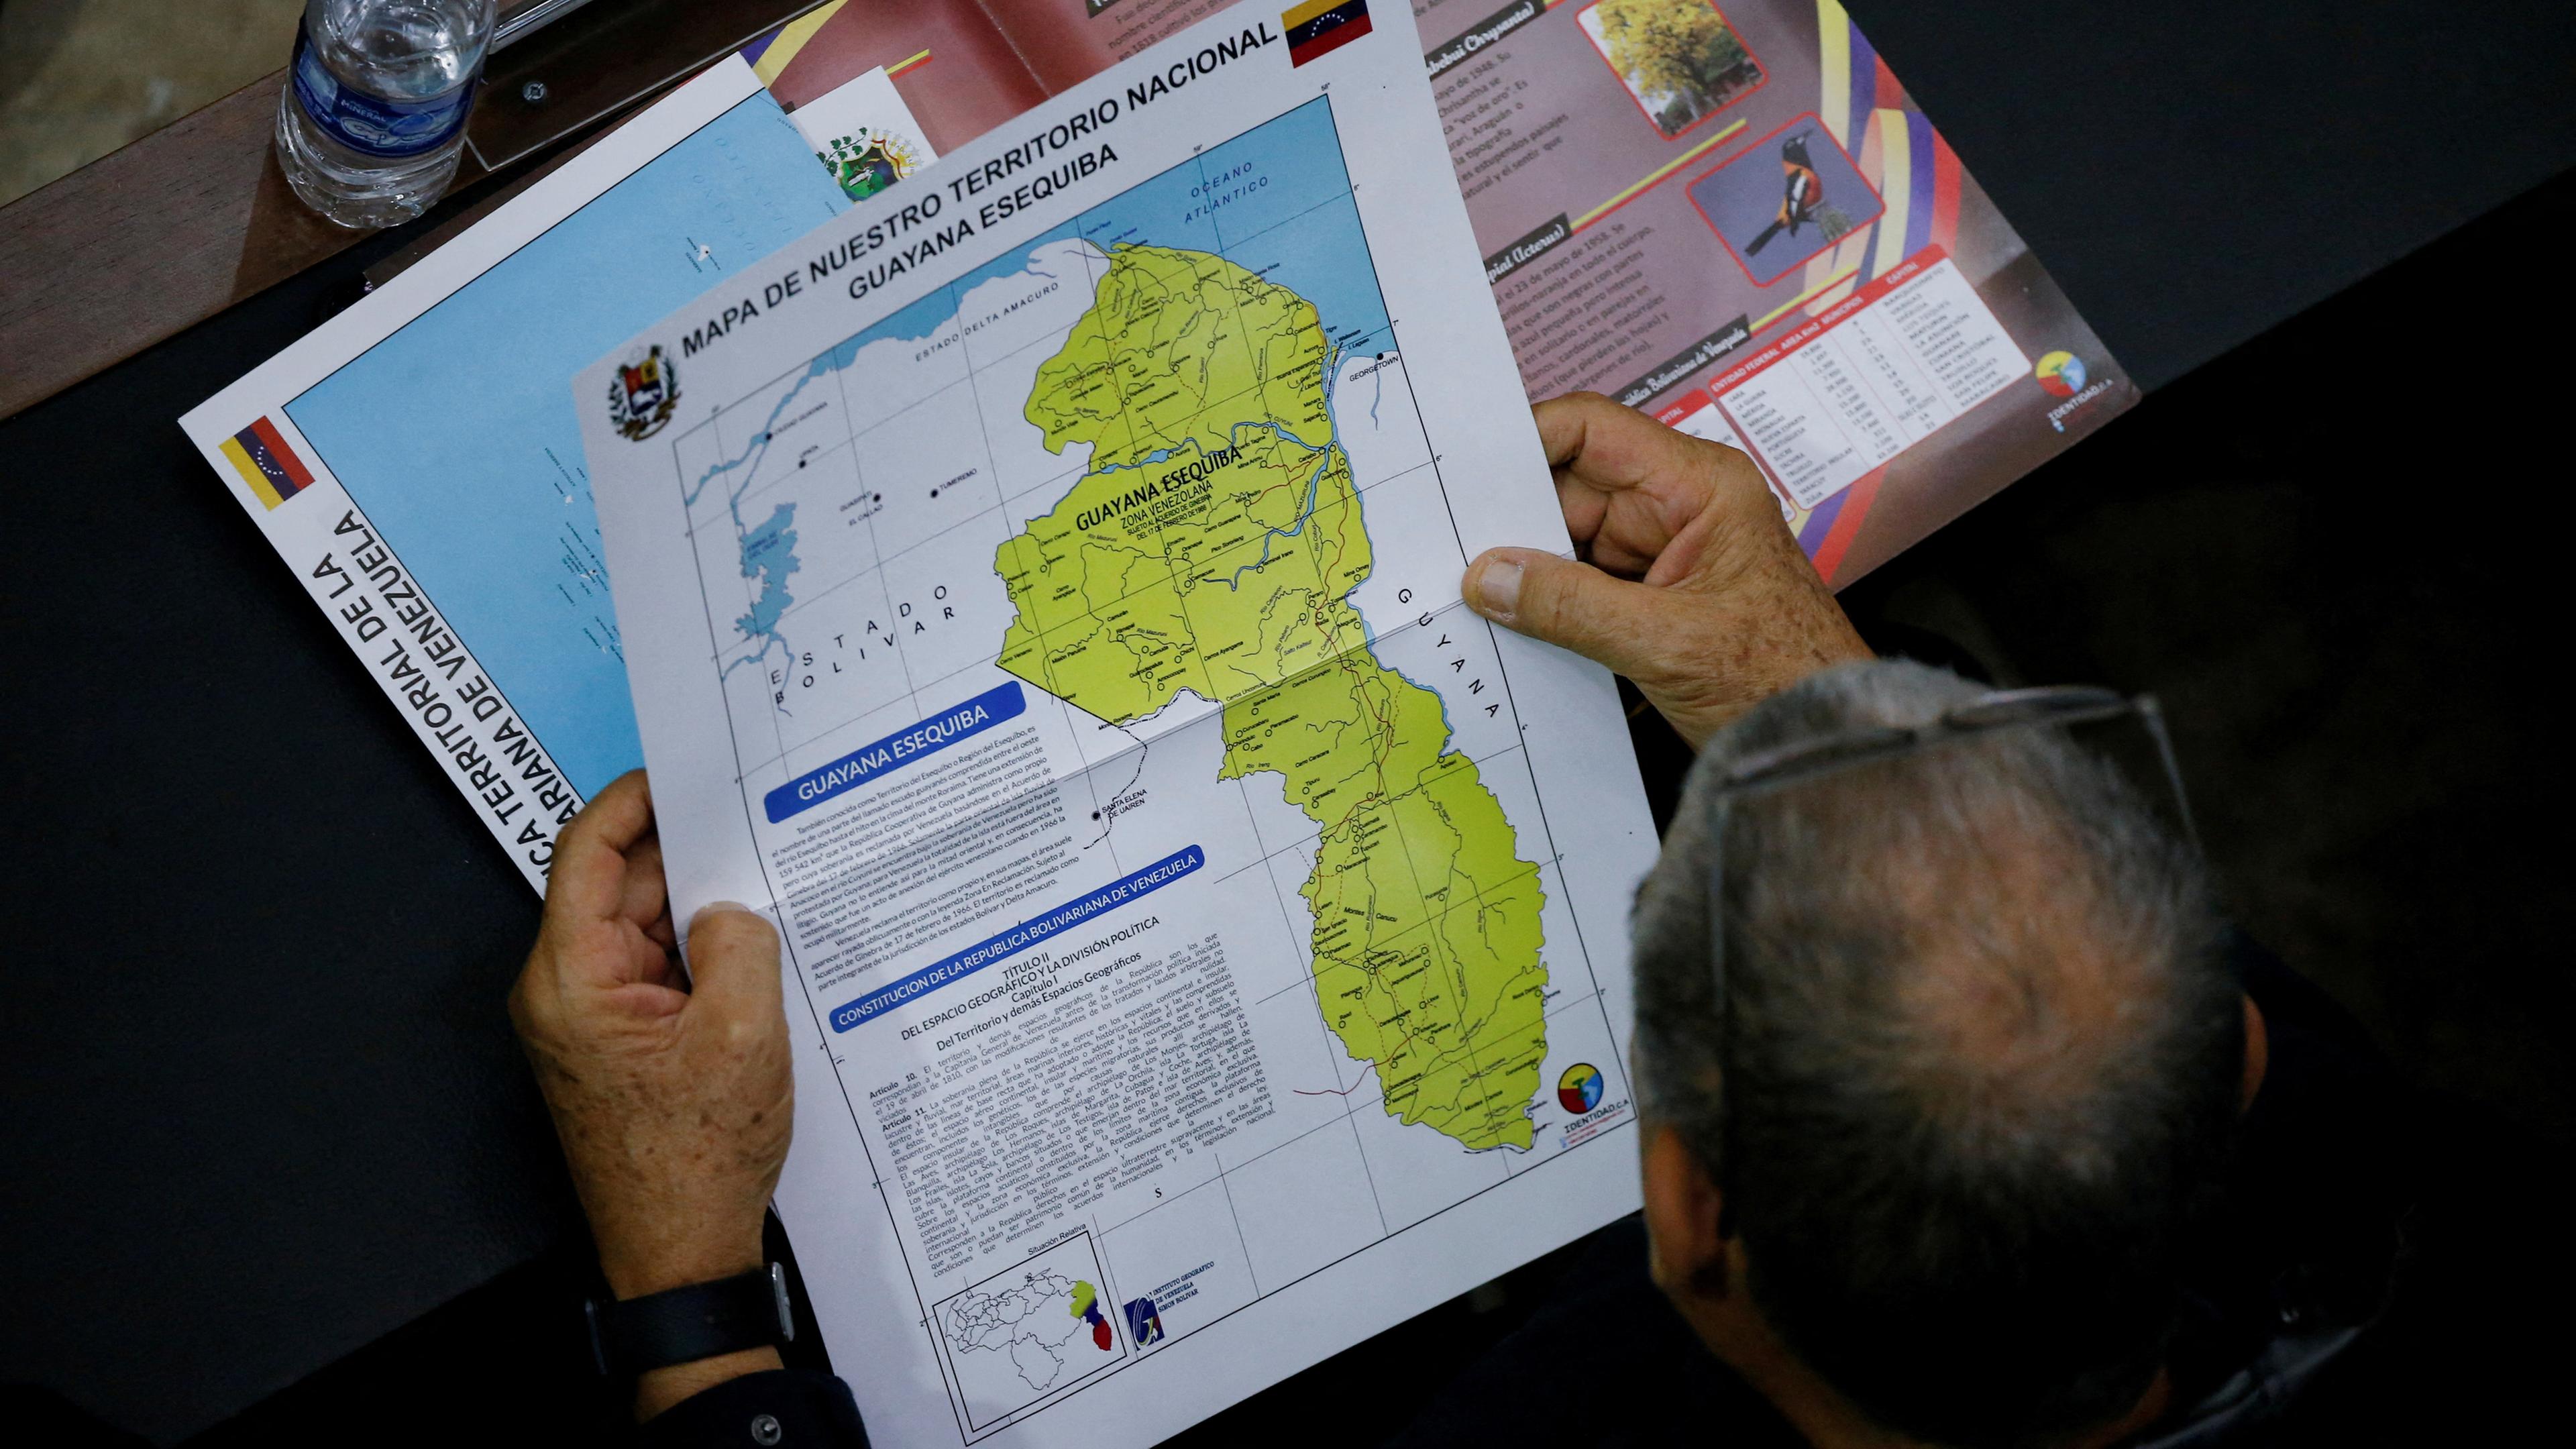 Ein Mitglied der Nationalversammlung hält eine Karte in der Hand, auf der die umstrittene Esequibo-Region als Teil Venezuelas zu sehen ist